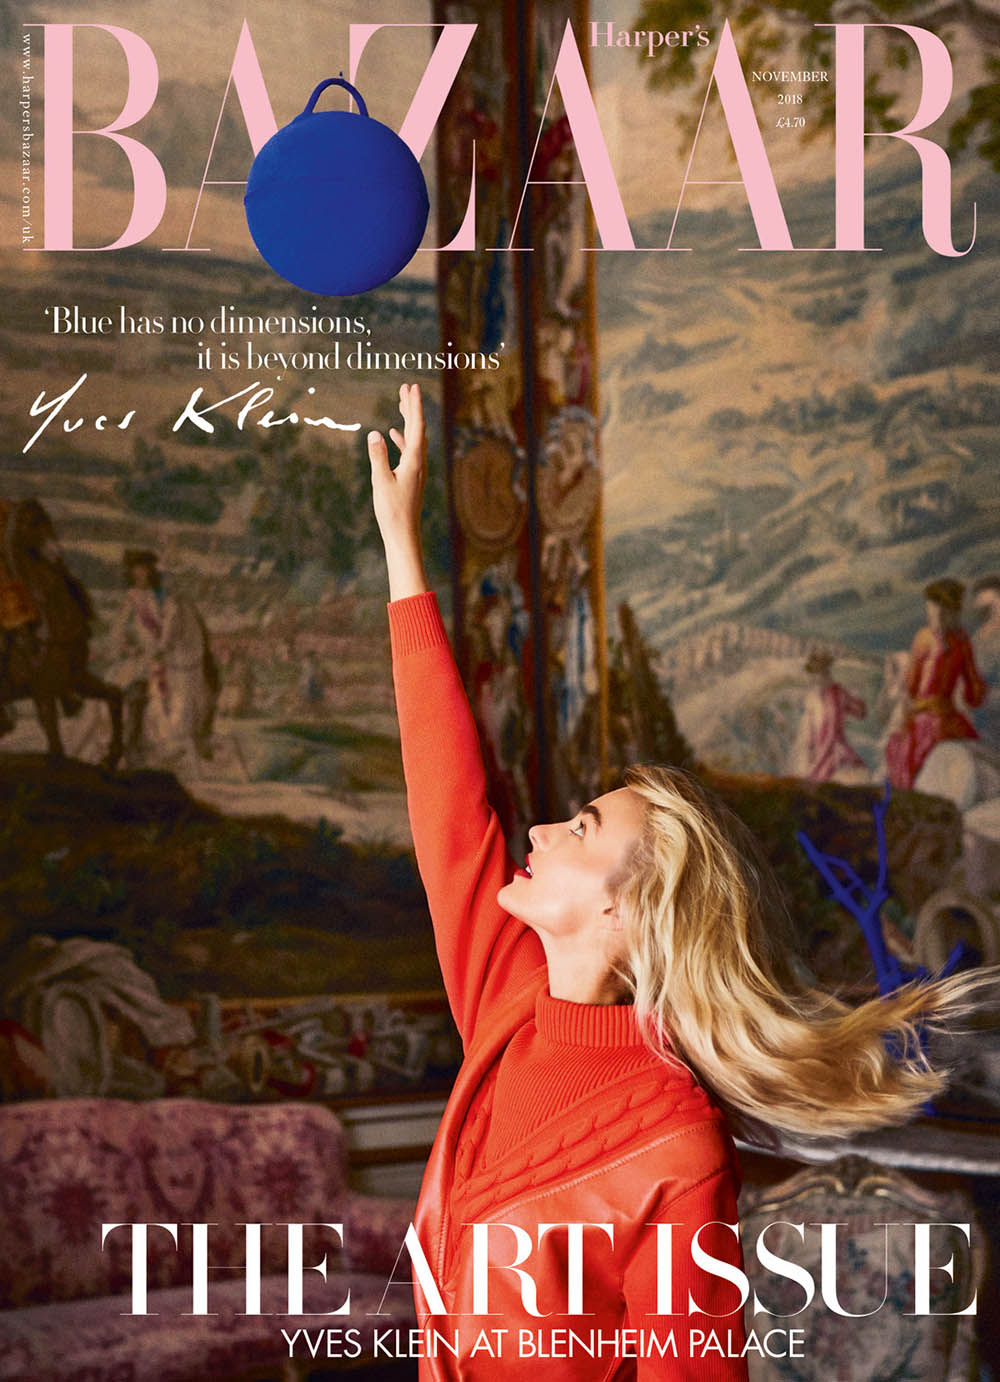 Maartje Verhoef covers Harper’s Bazaar UK November 2018 by Josh Shinner